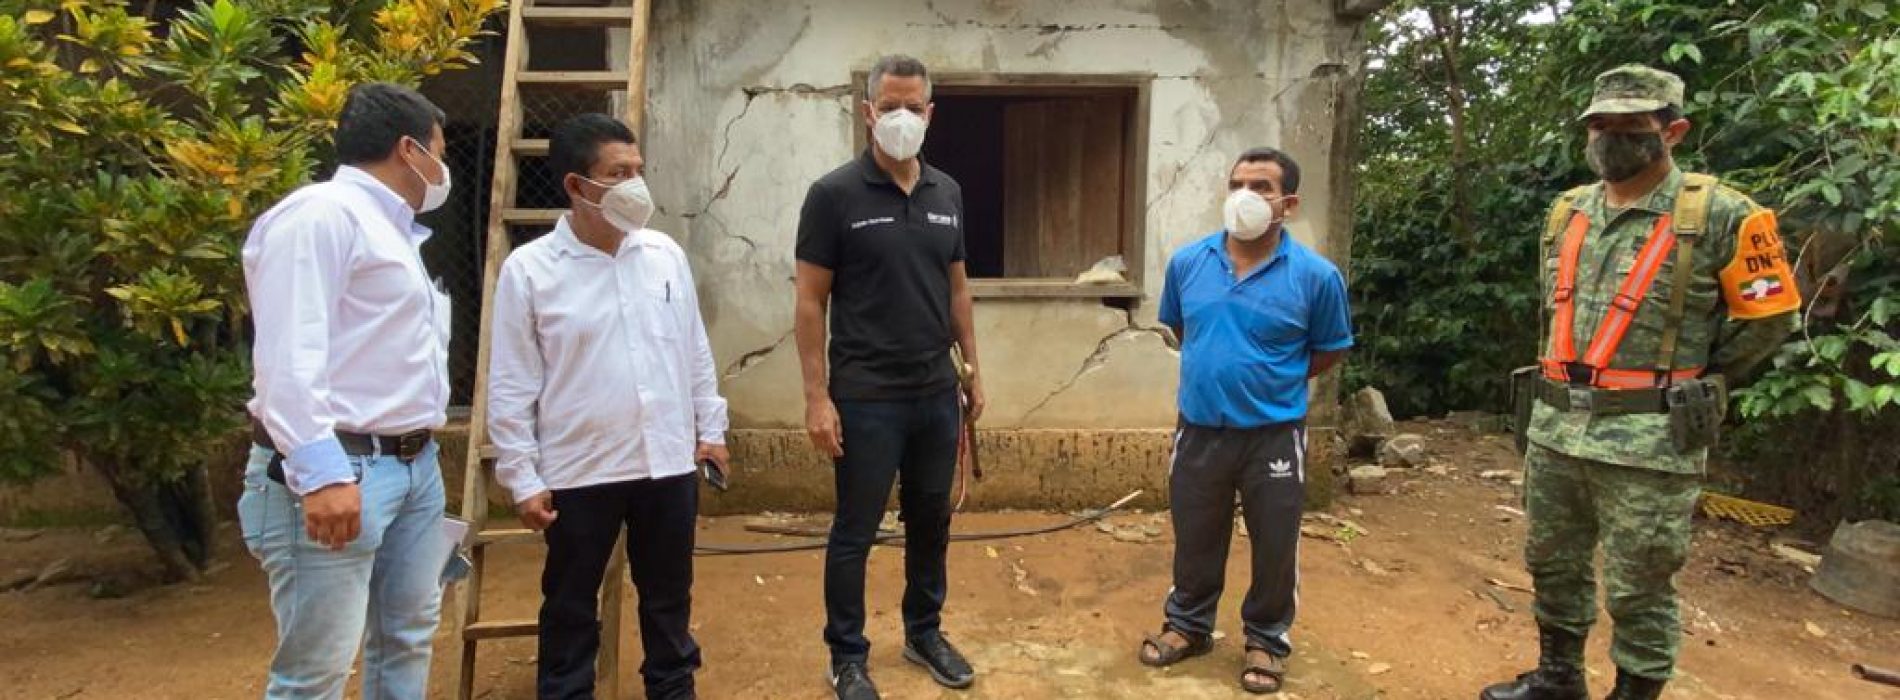 Encabeza Alejandro Murat 4to recorrido en comunidades afectadas por sismo